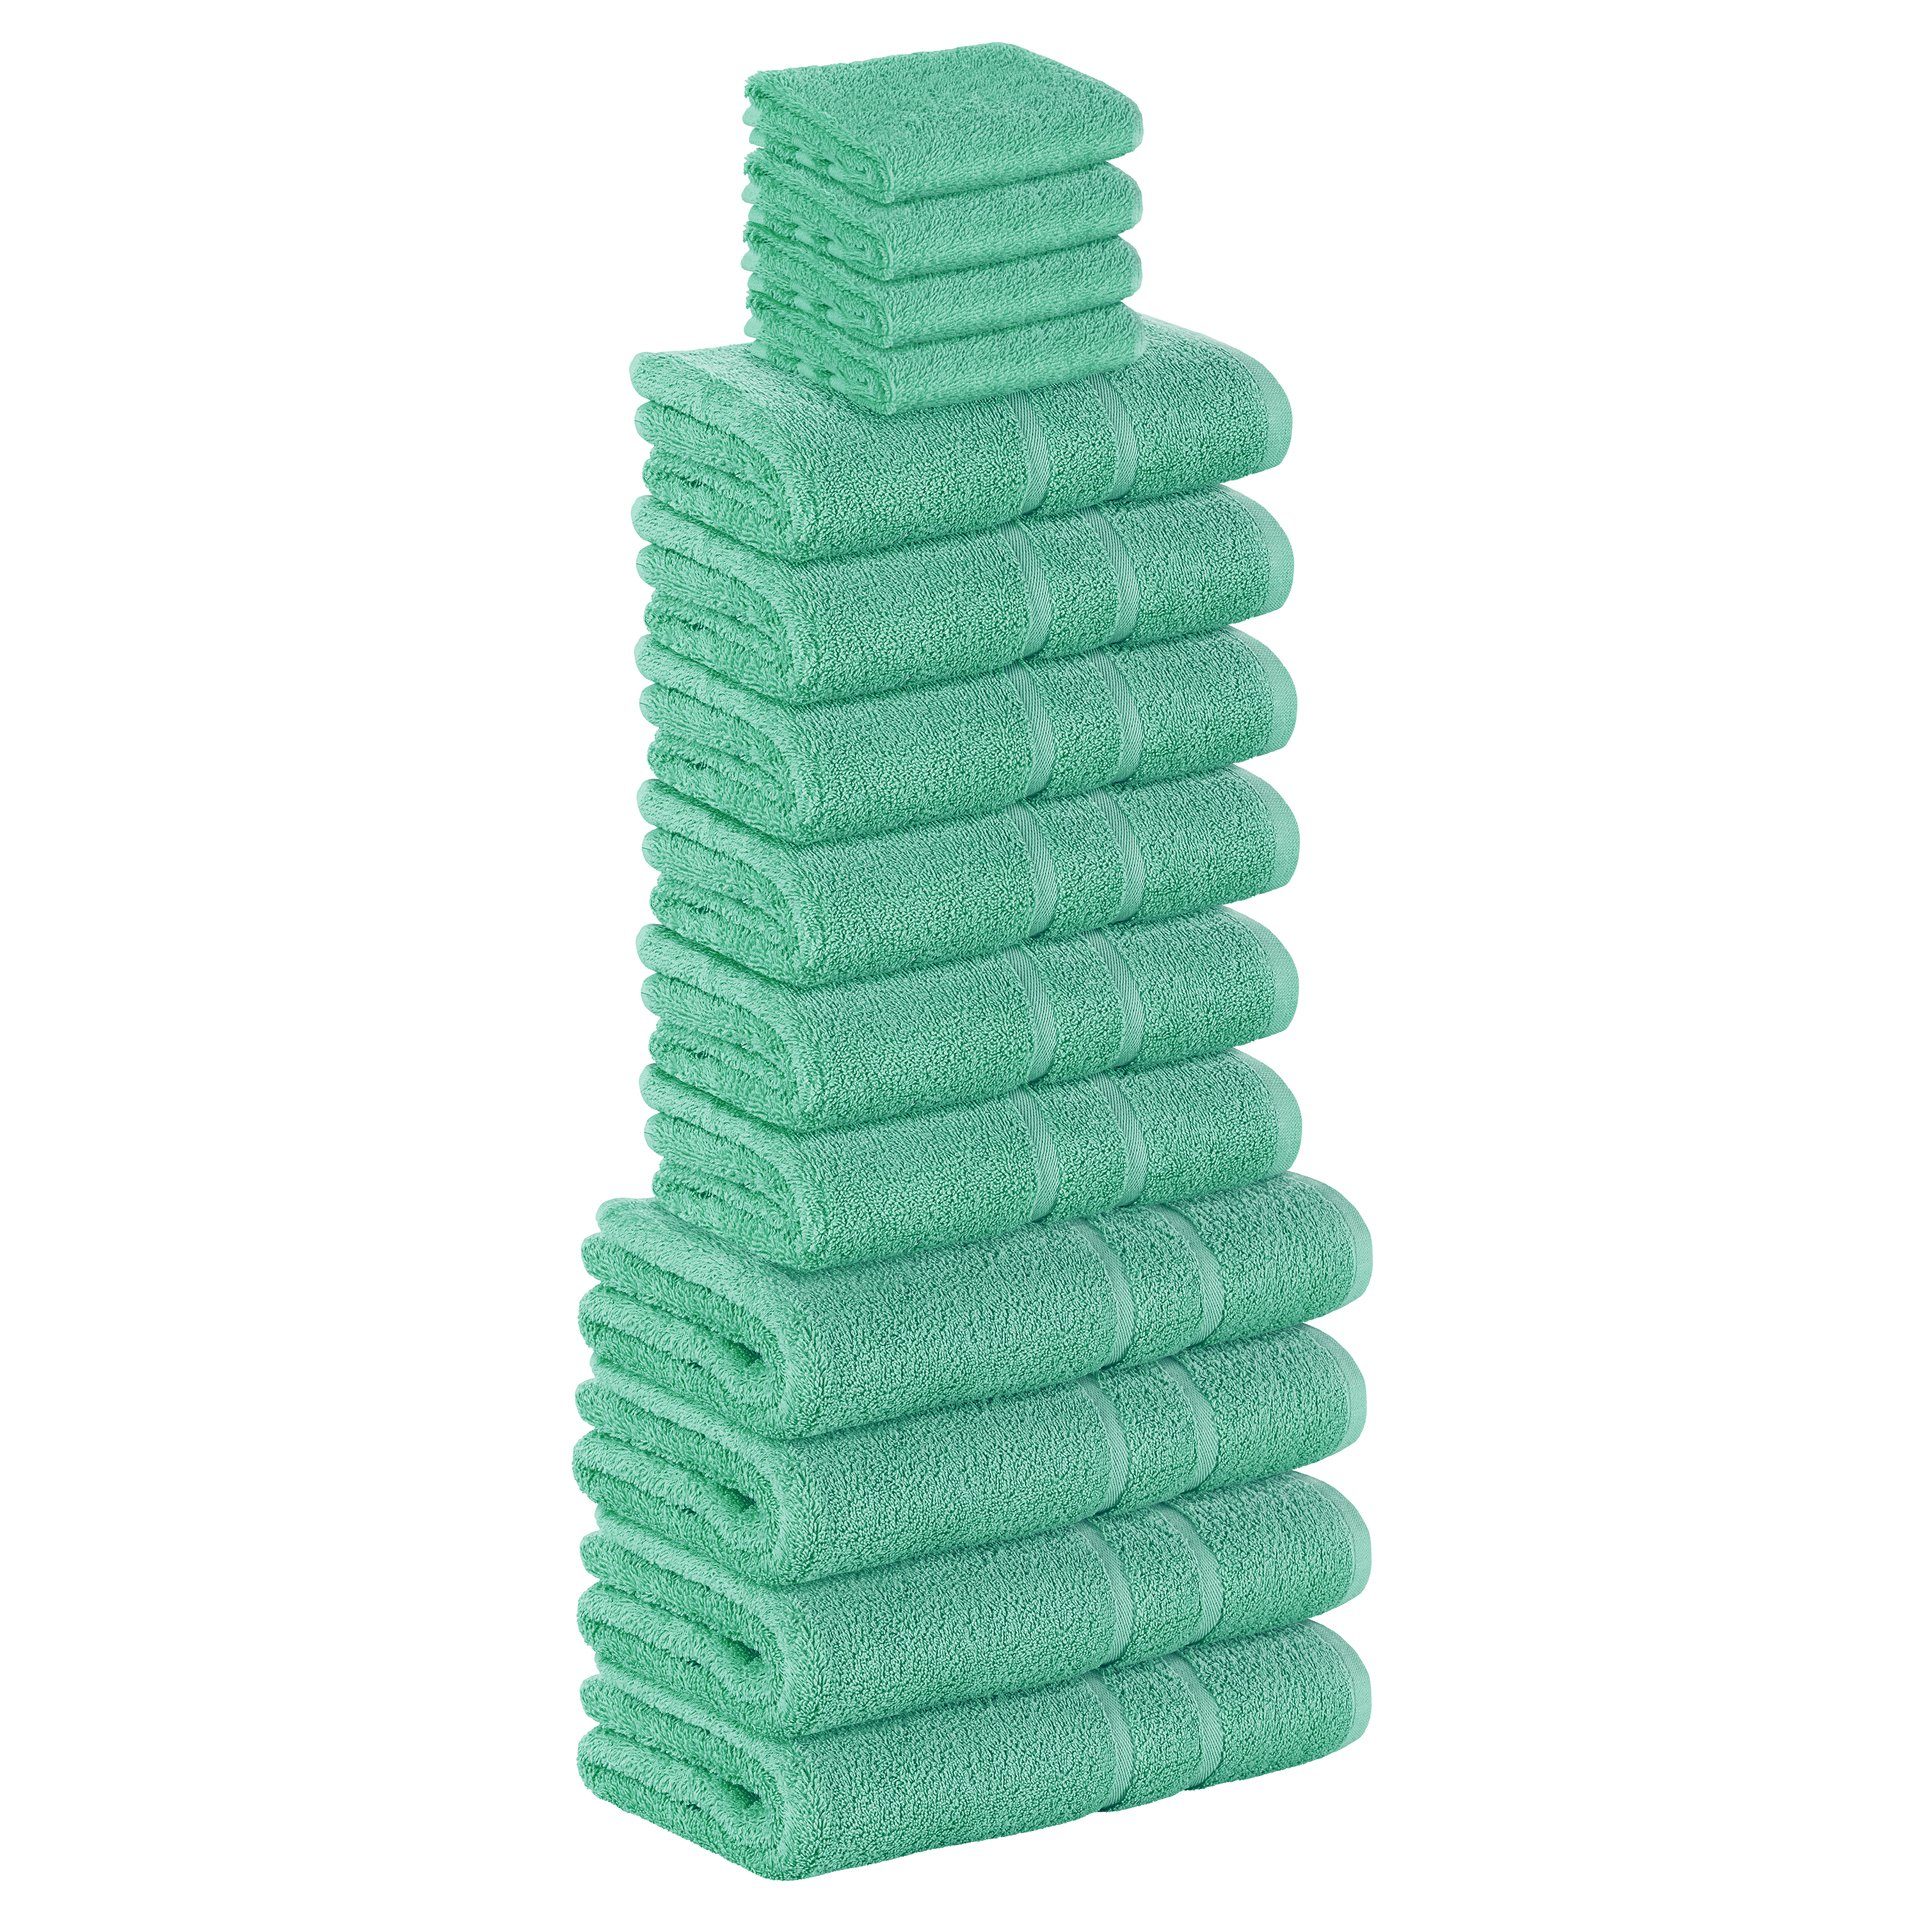 StickandShine Handtuch Set 4x Gästehandtuch 6x Handtücher 4x Duschtücher als SET in verschiedenen Farben (14 Teilig) 100% Baumwolle 500 GSM Frottee 14er Handtuch Pack, 100% Baumwolle 500 GSM Smaragdgrün